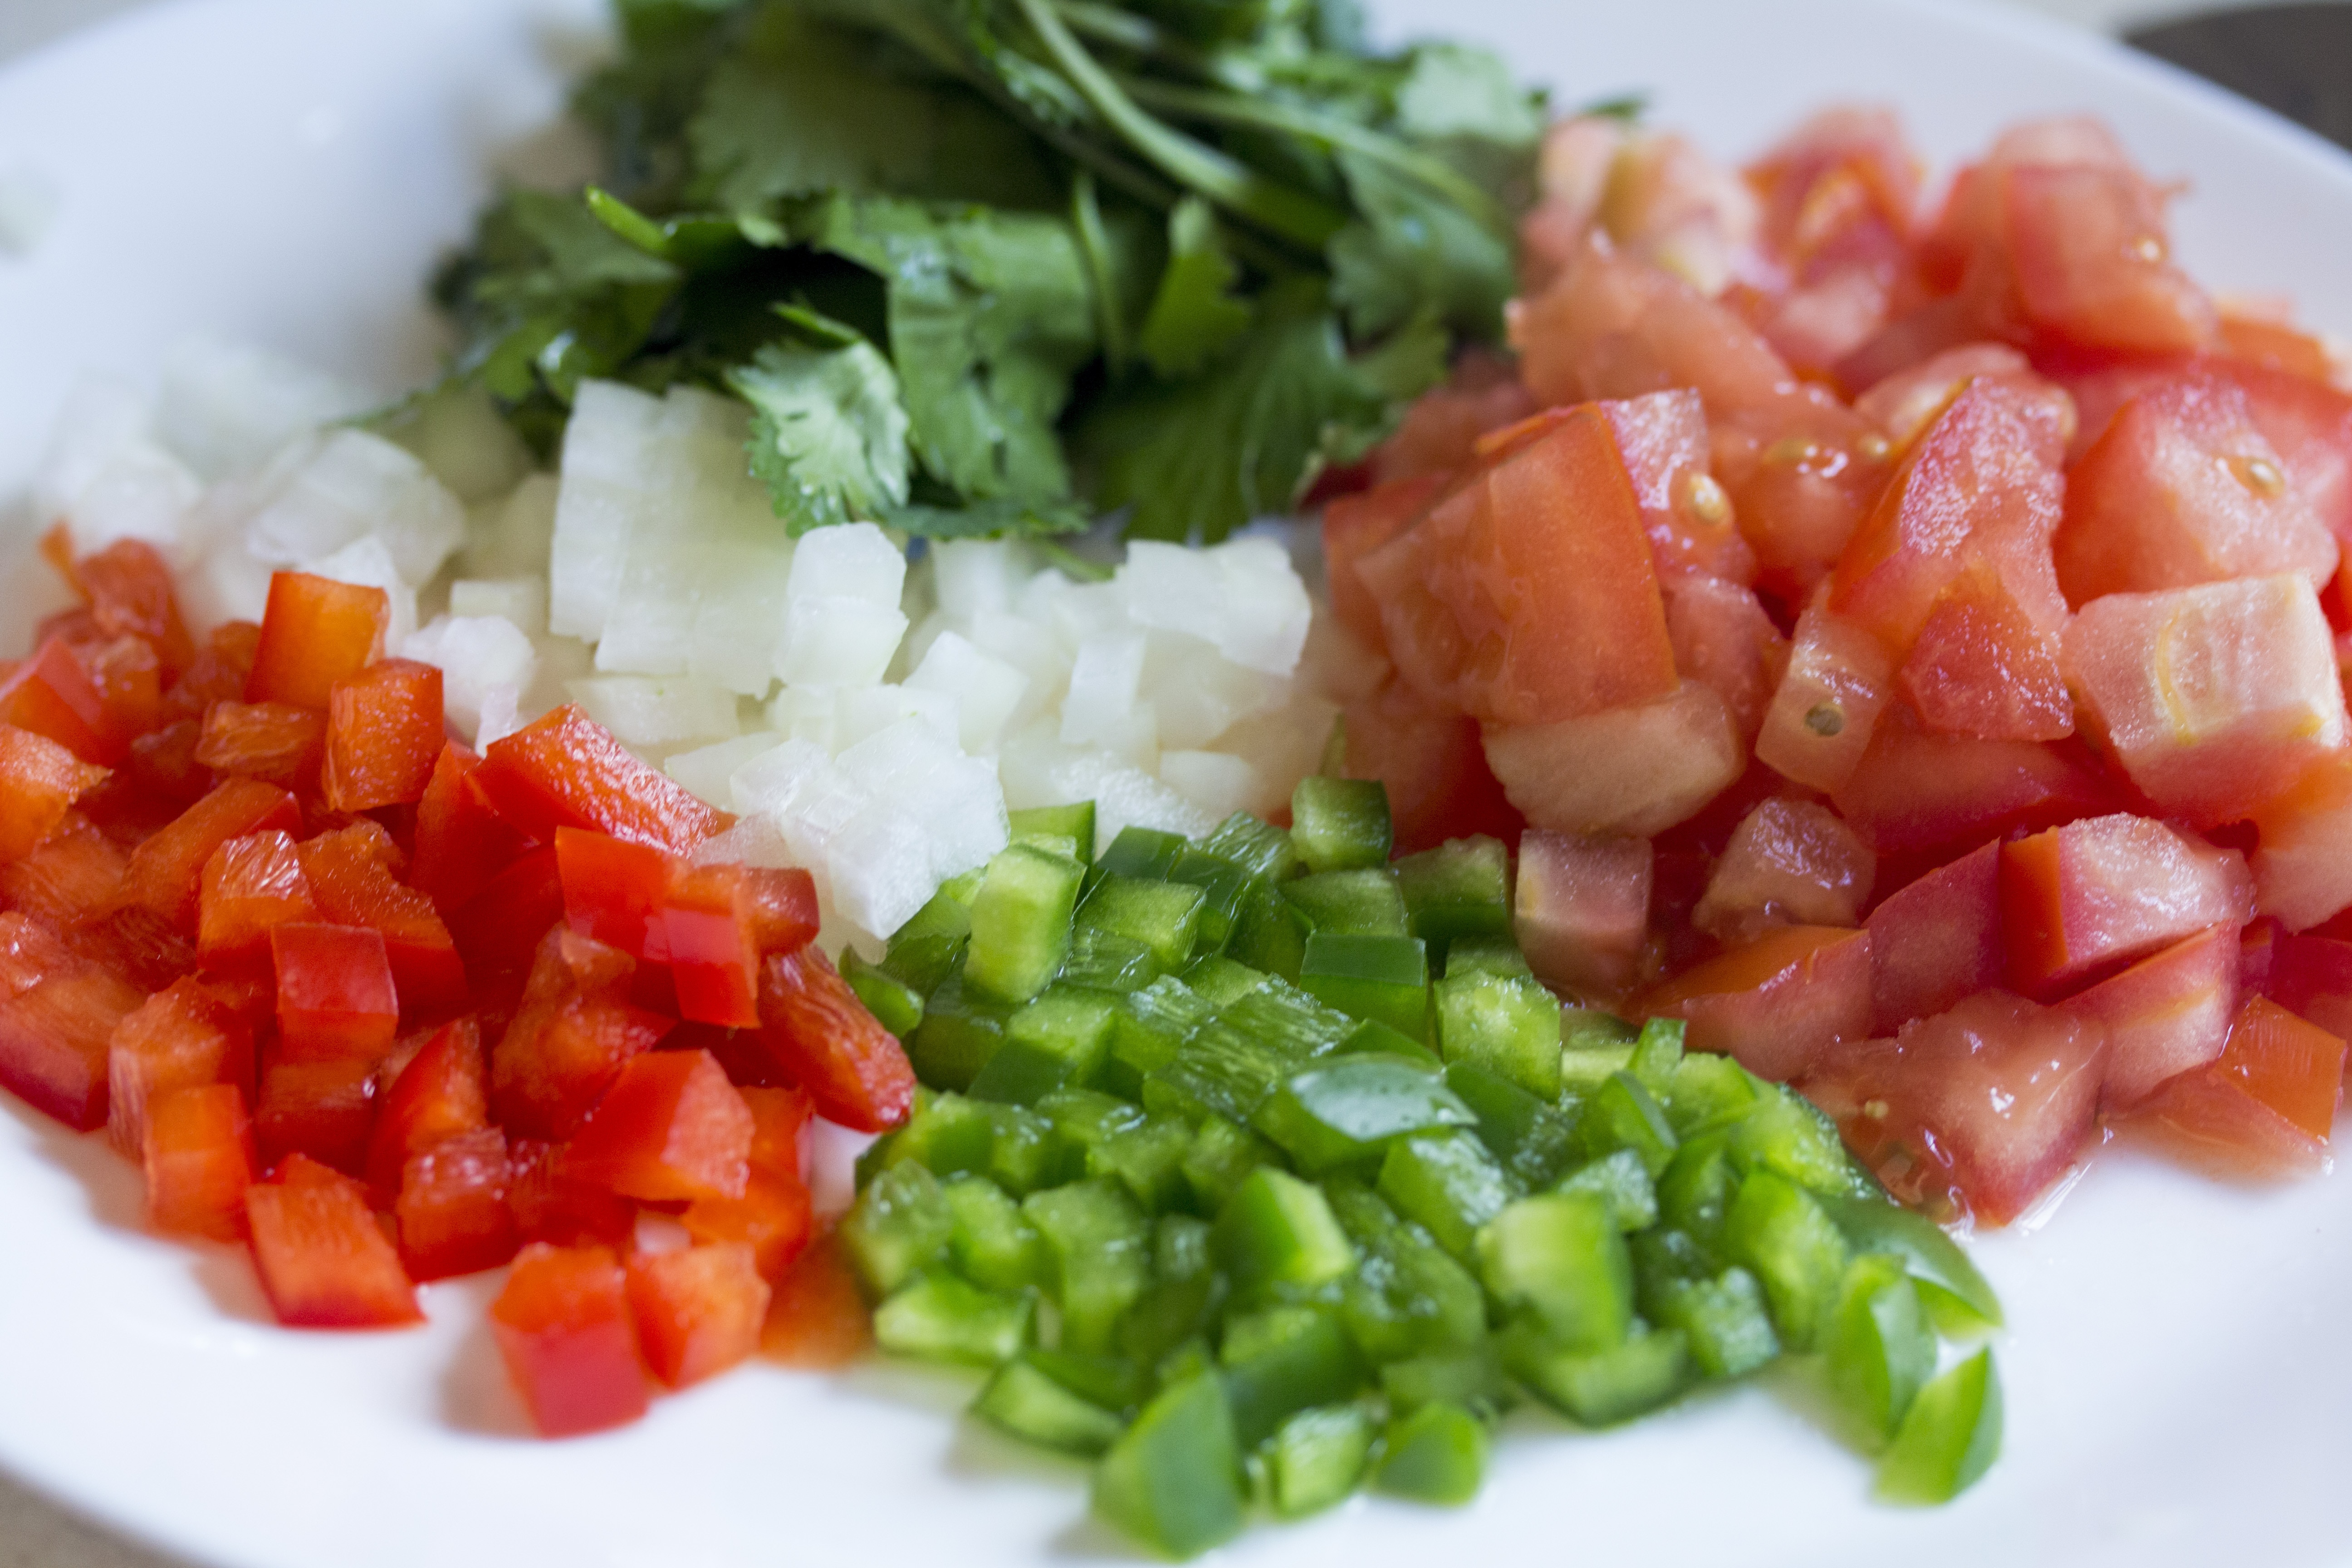 slice vegetables on white plate